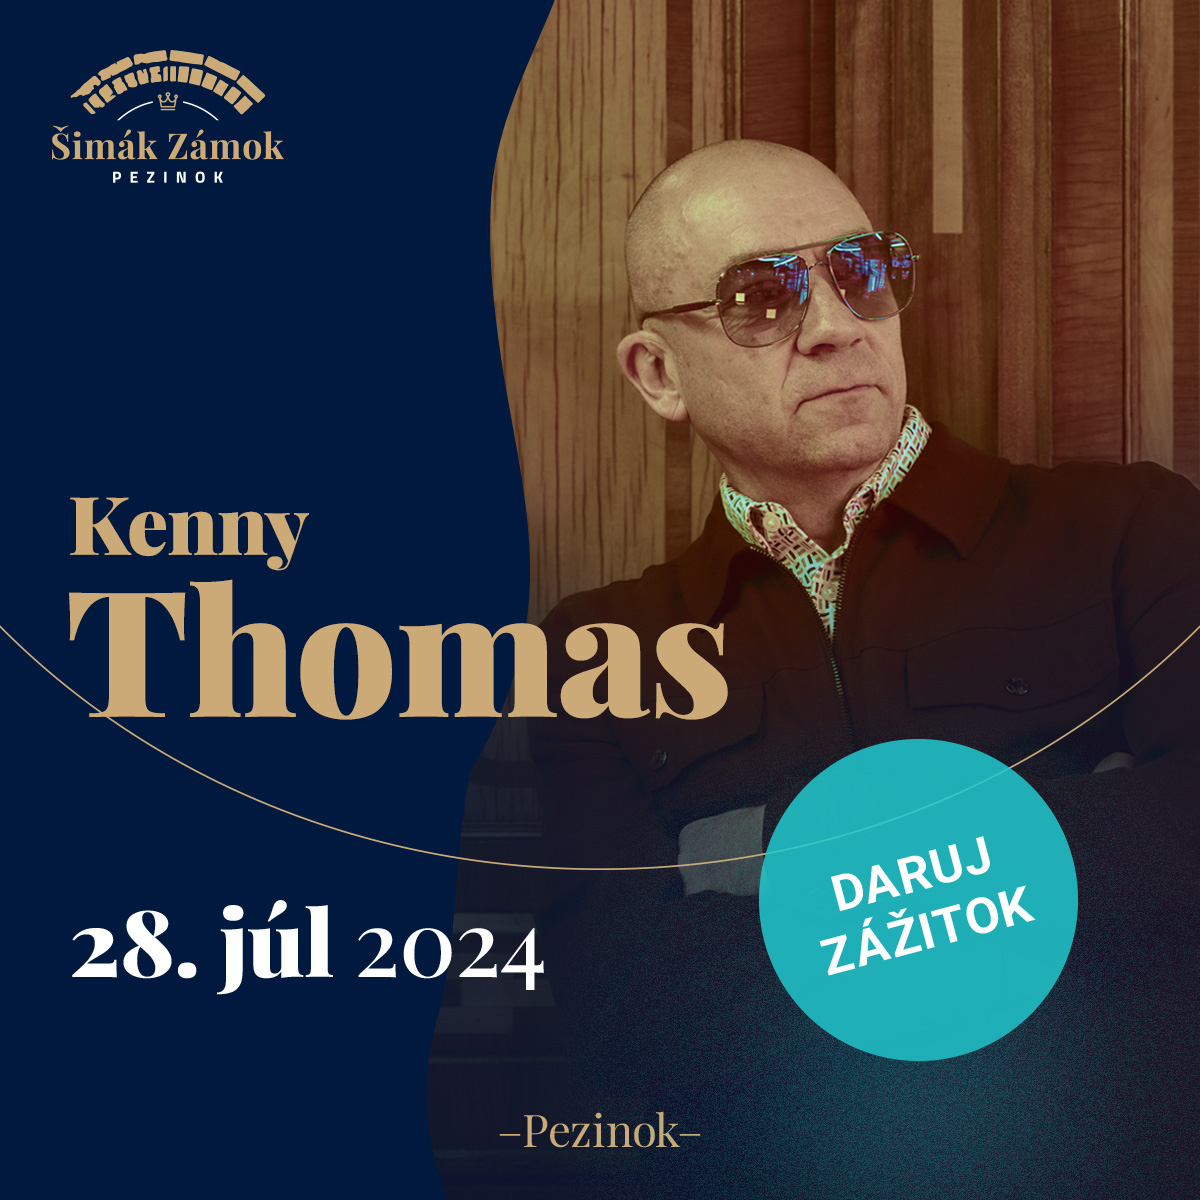 Kenny Thomas na zámku - UK soul